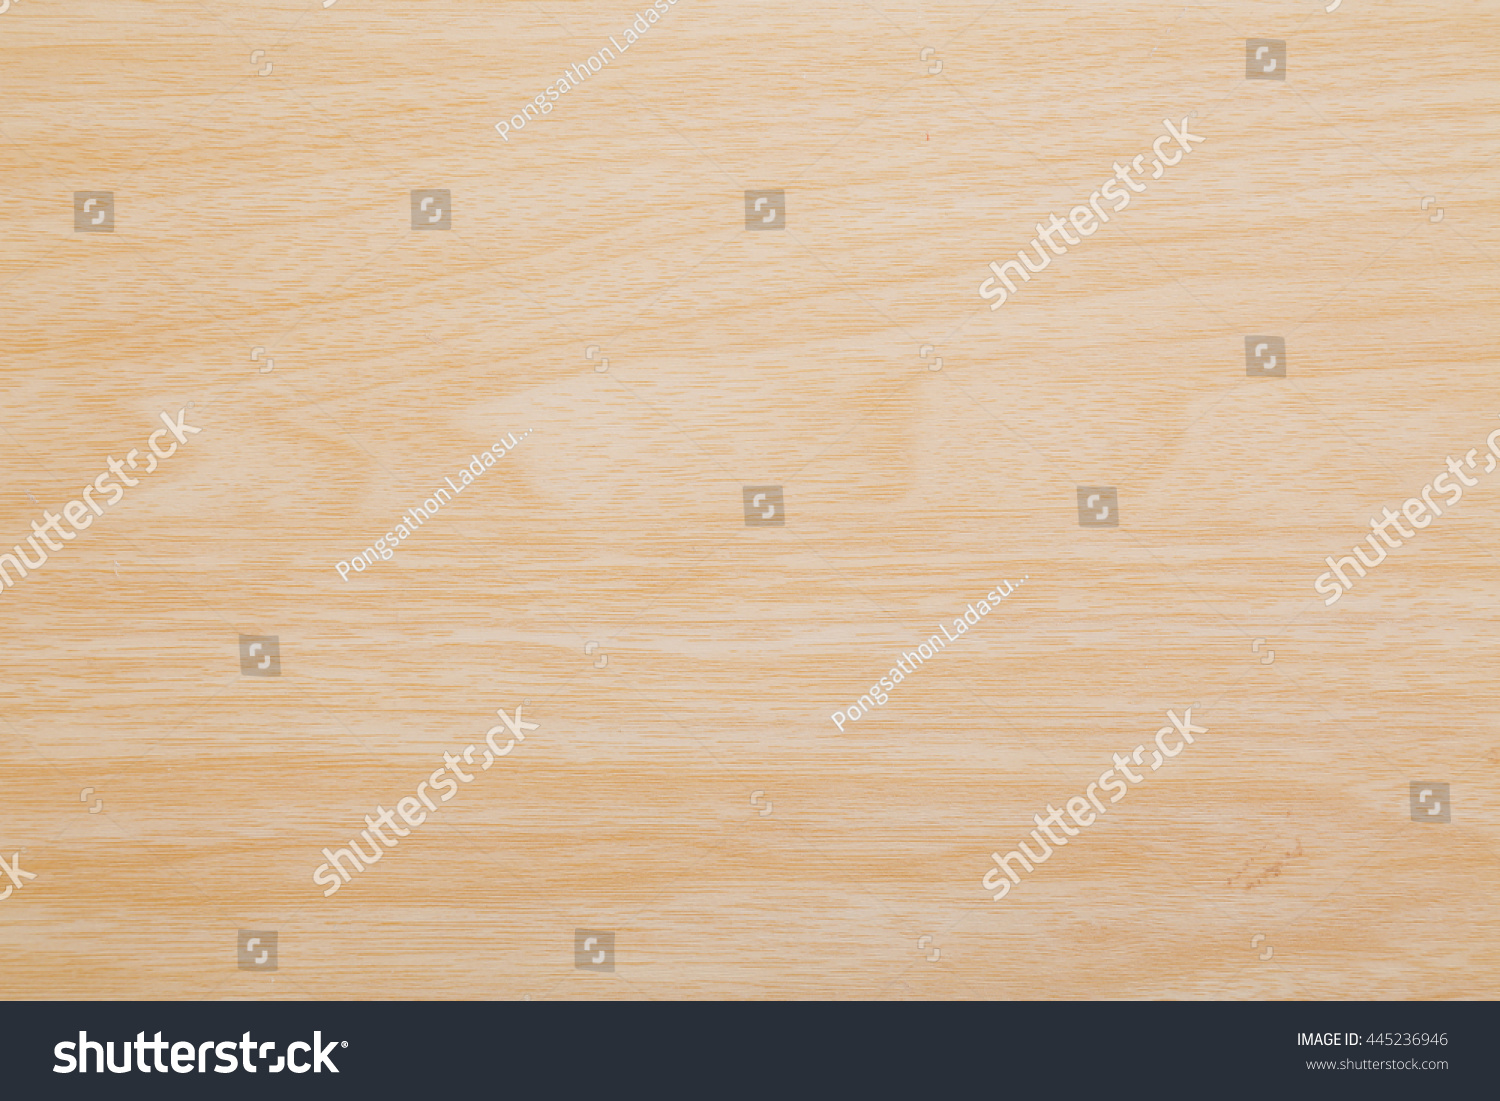 wood background #445236946